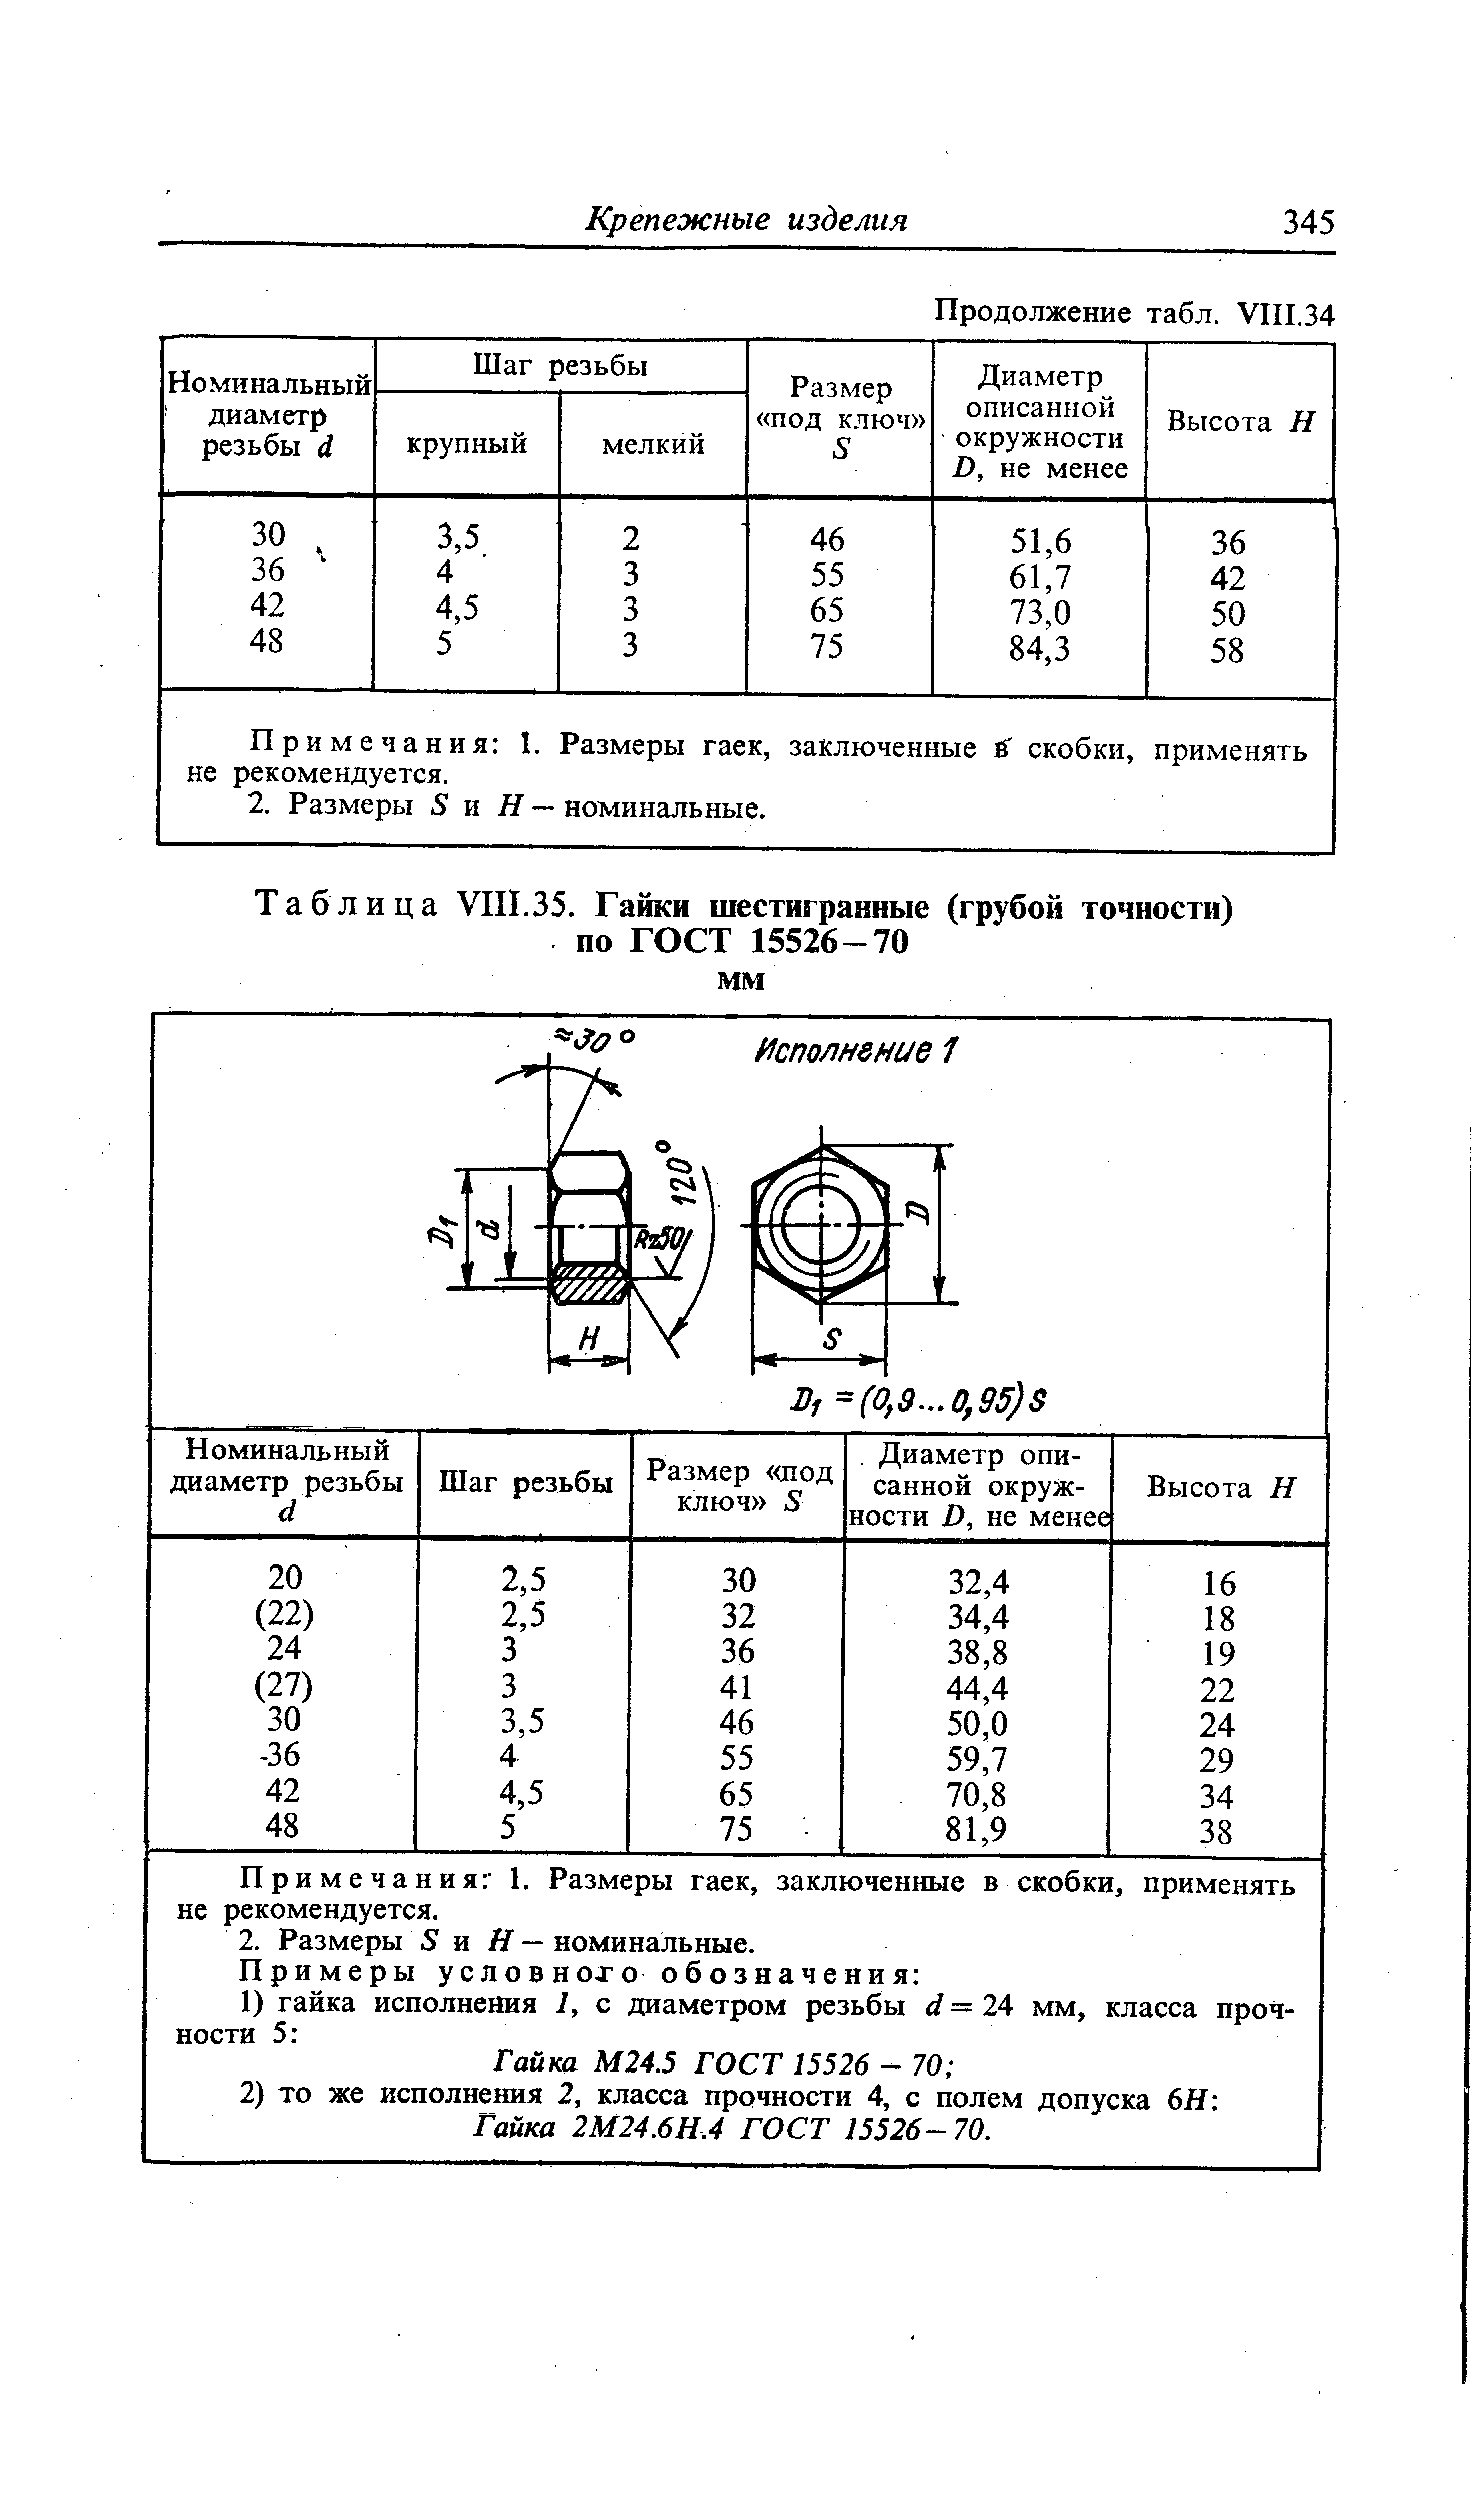 Таблица VIII.35. Гайки шестигранные (грубой точности) по ГОСТ 15526-70 мм
